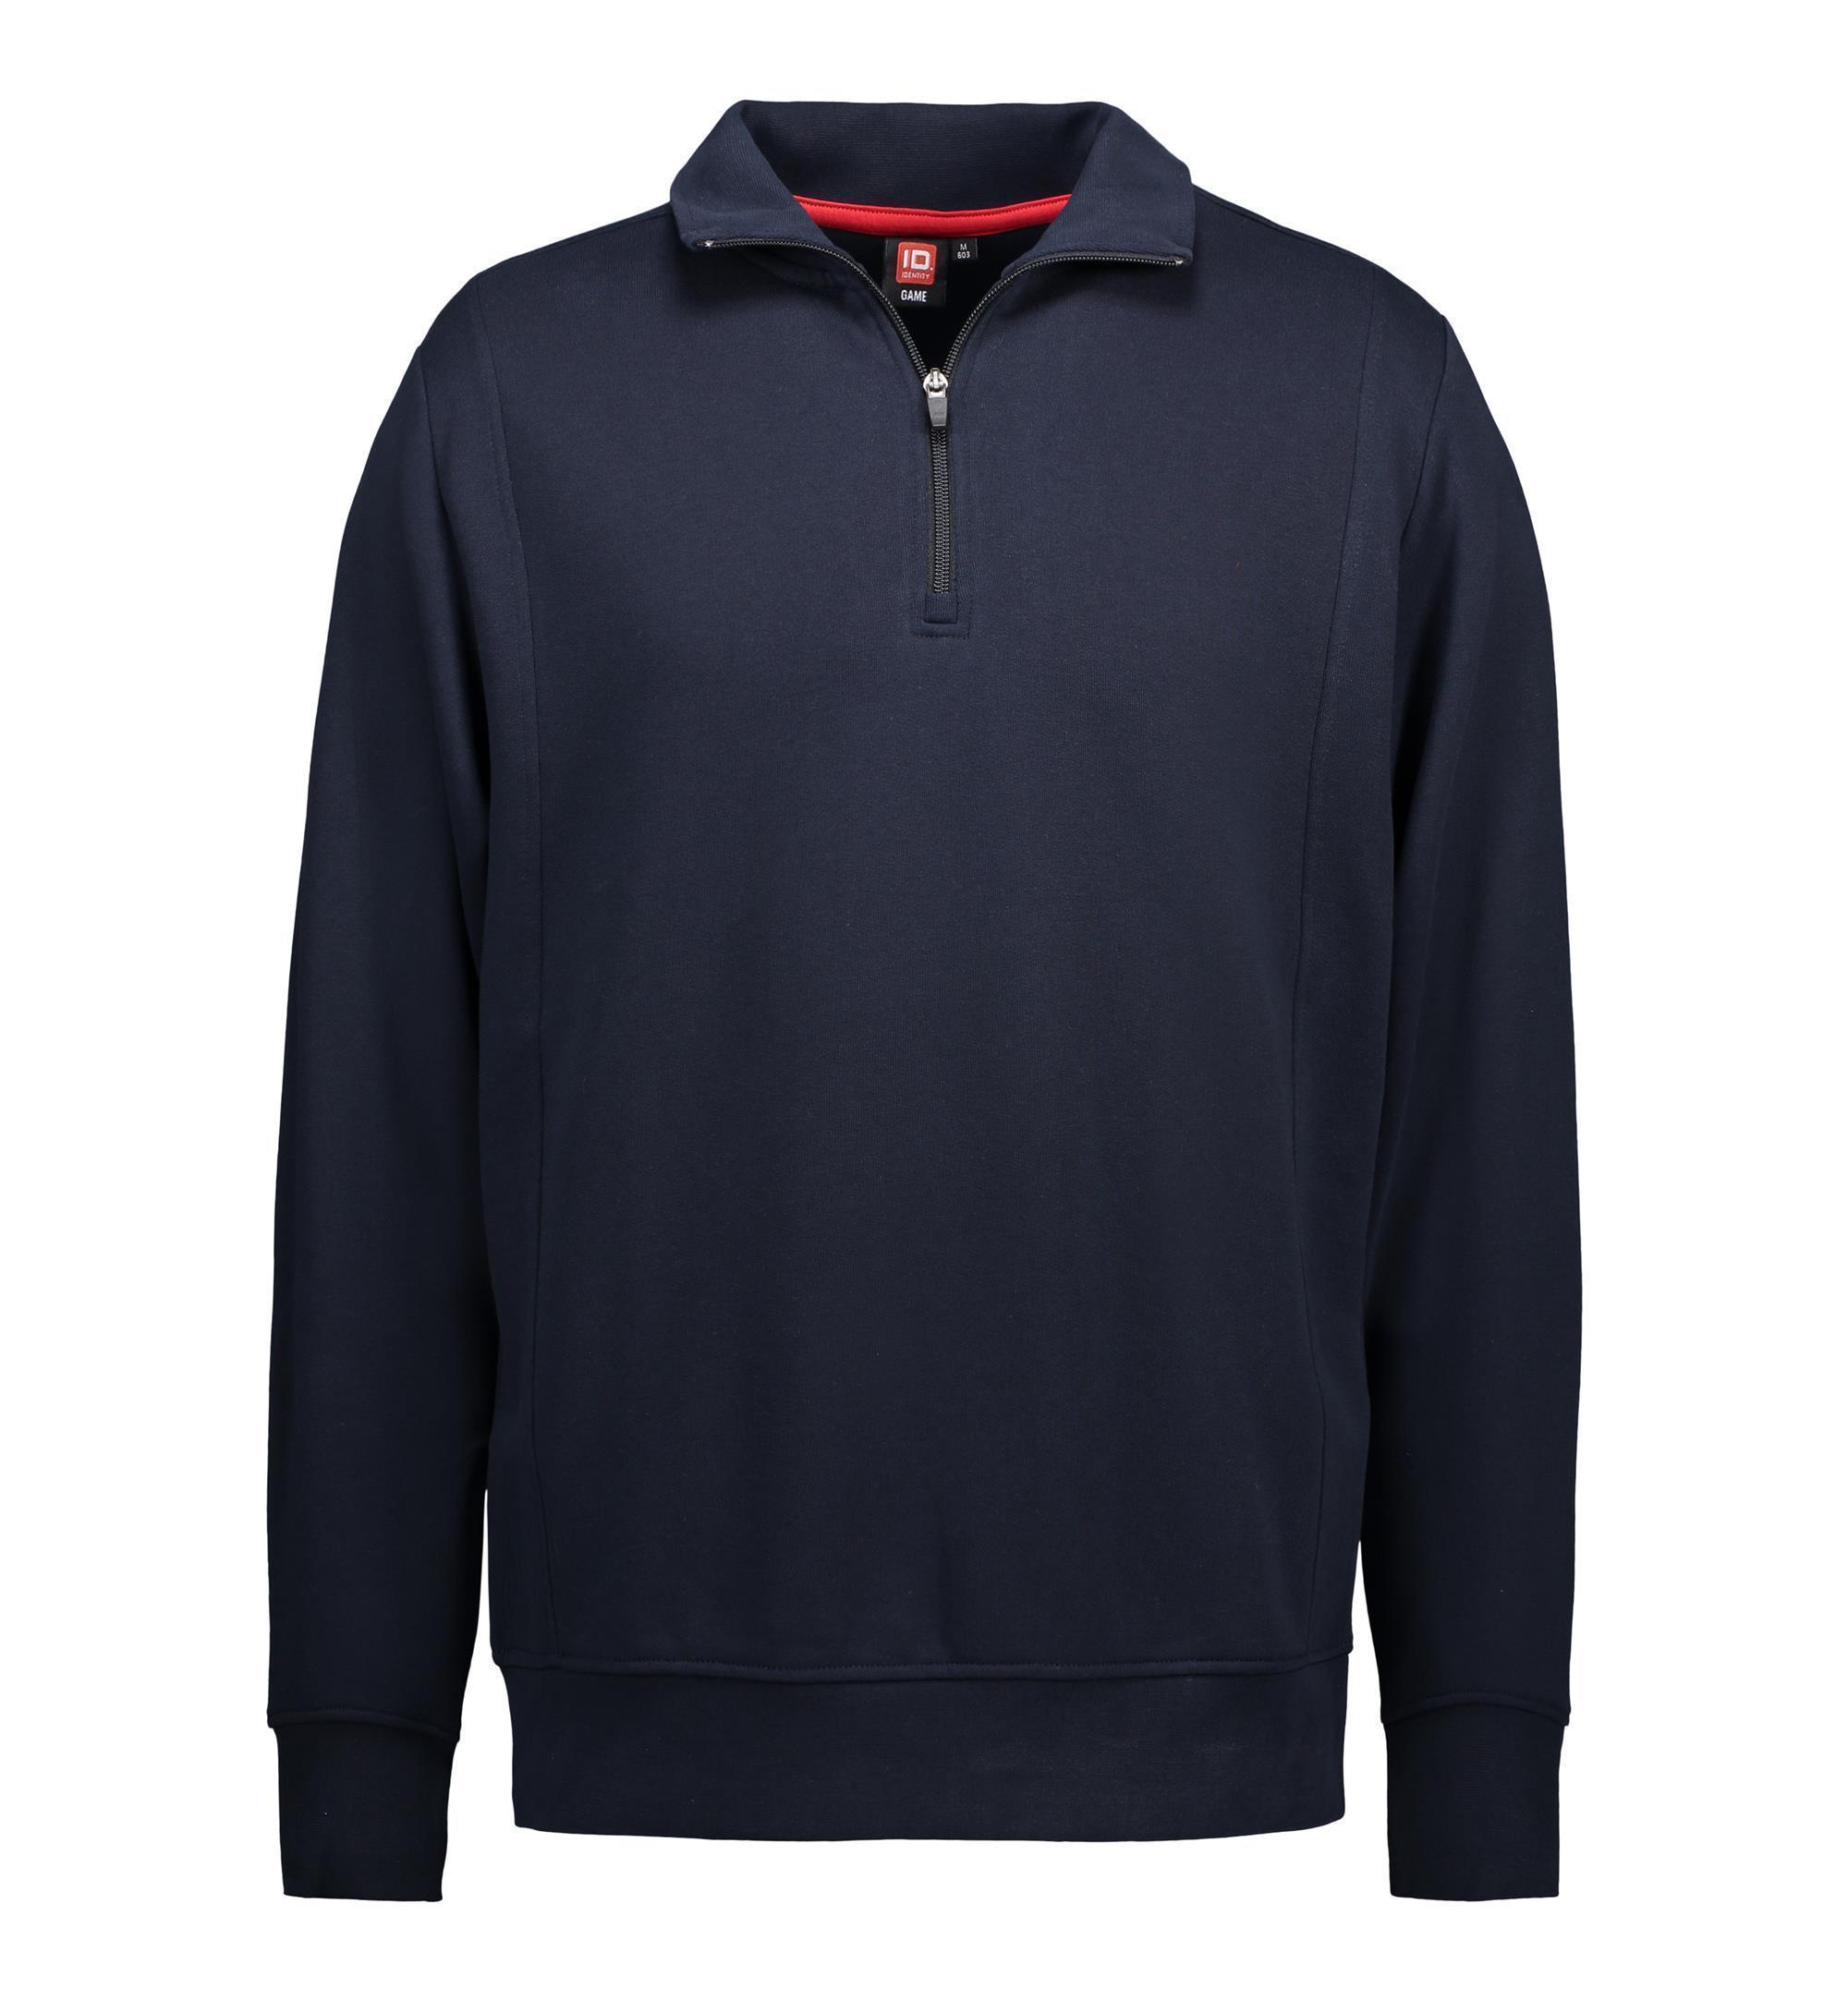 Herren Sweatshirt mit Reißverschluss 330-340 g/m² ID Identity® Navy XL